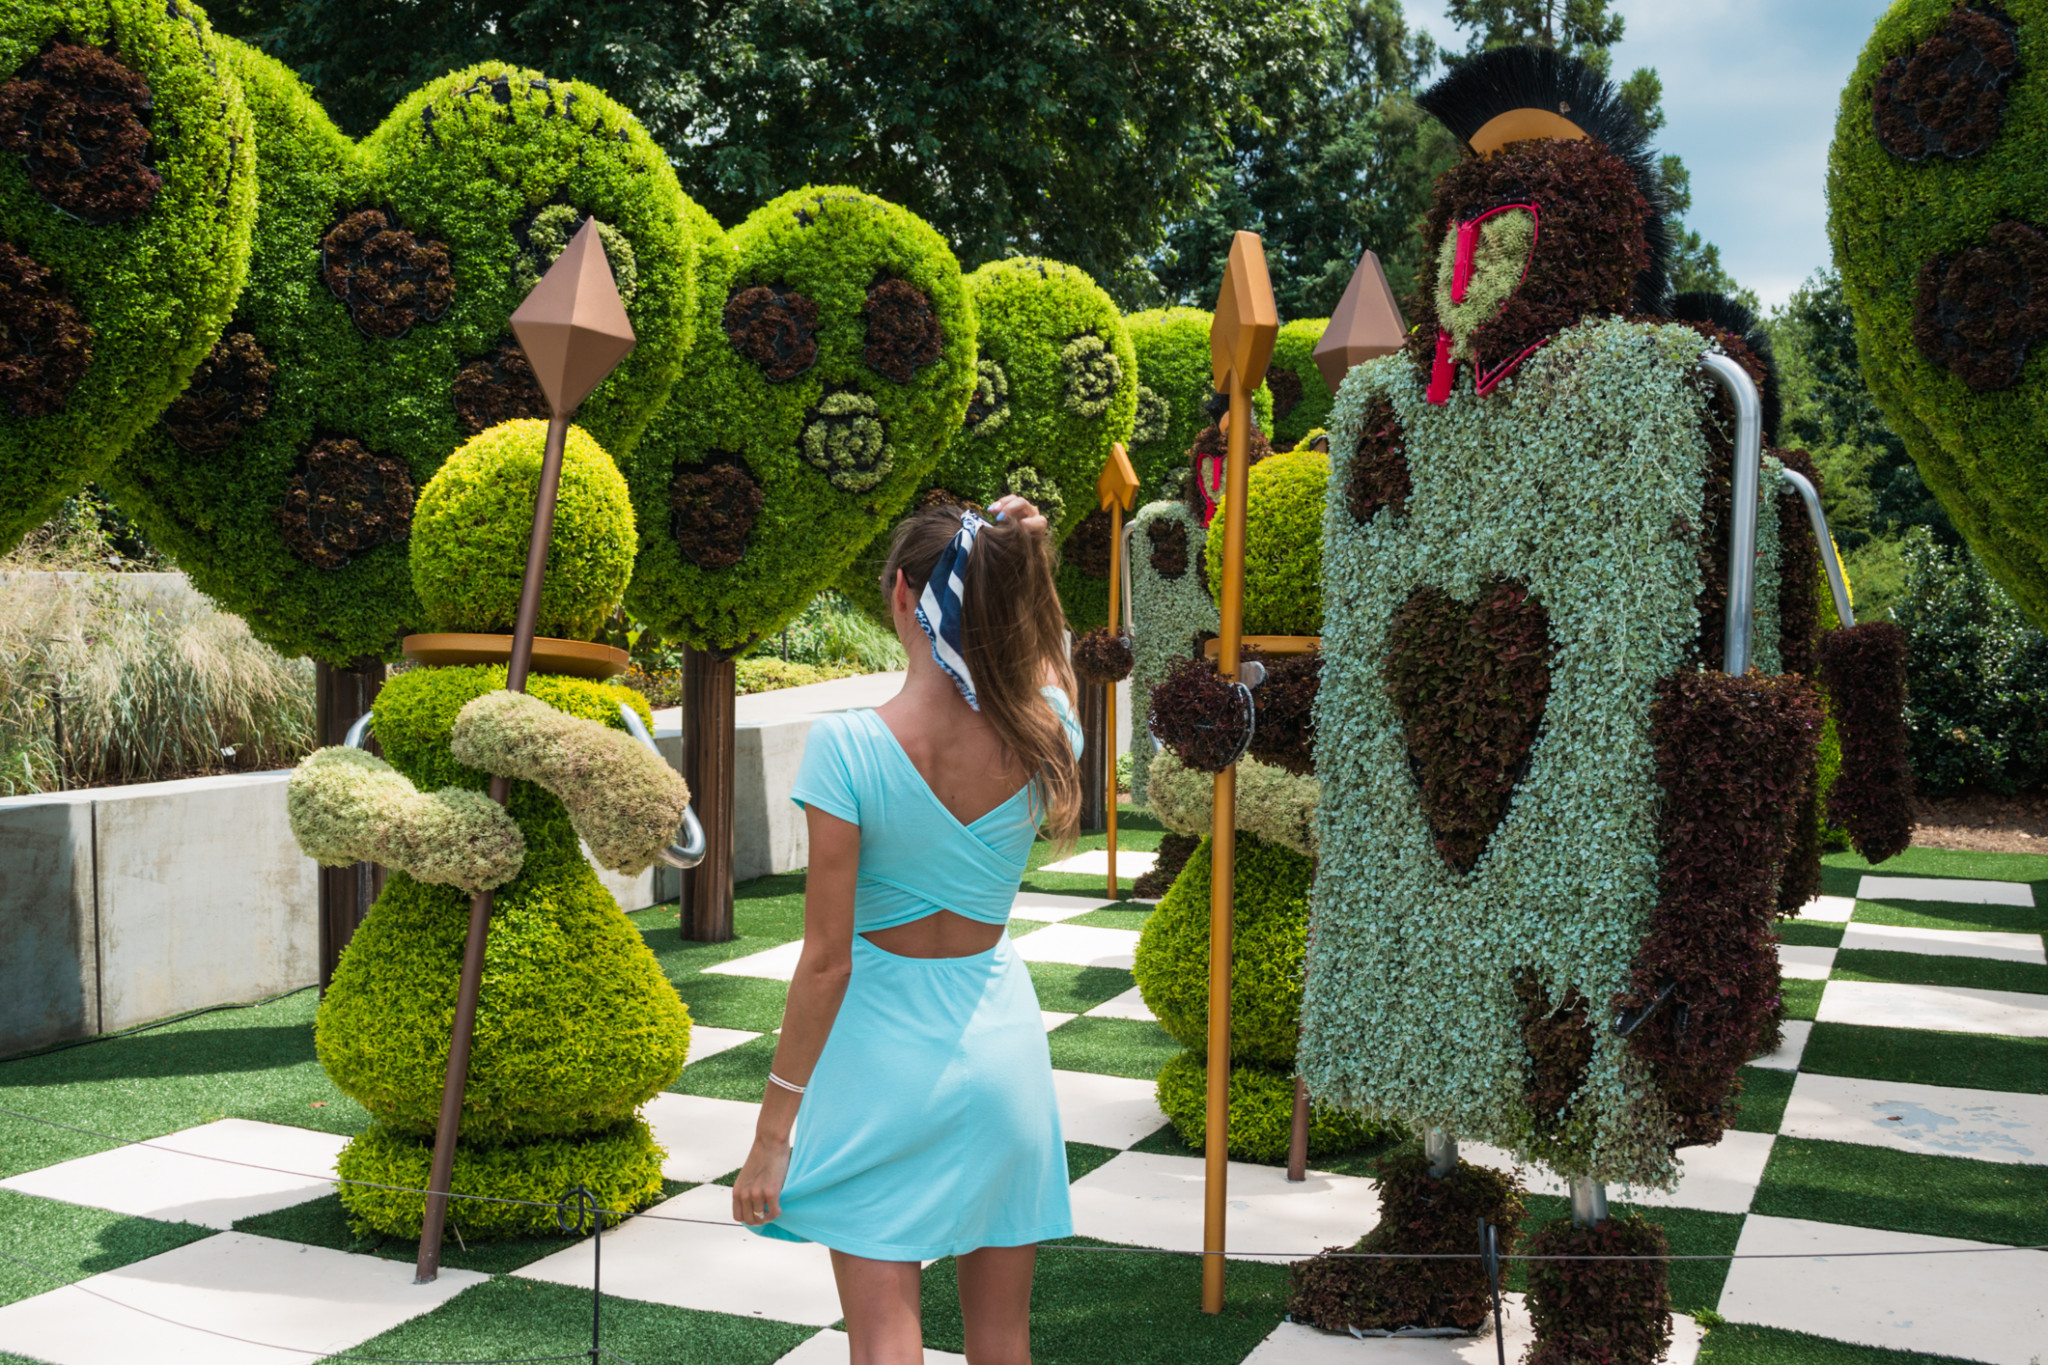 The Alice in Wonderland Gardens Exhibit • Jetset Jansen